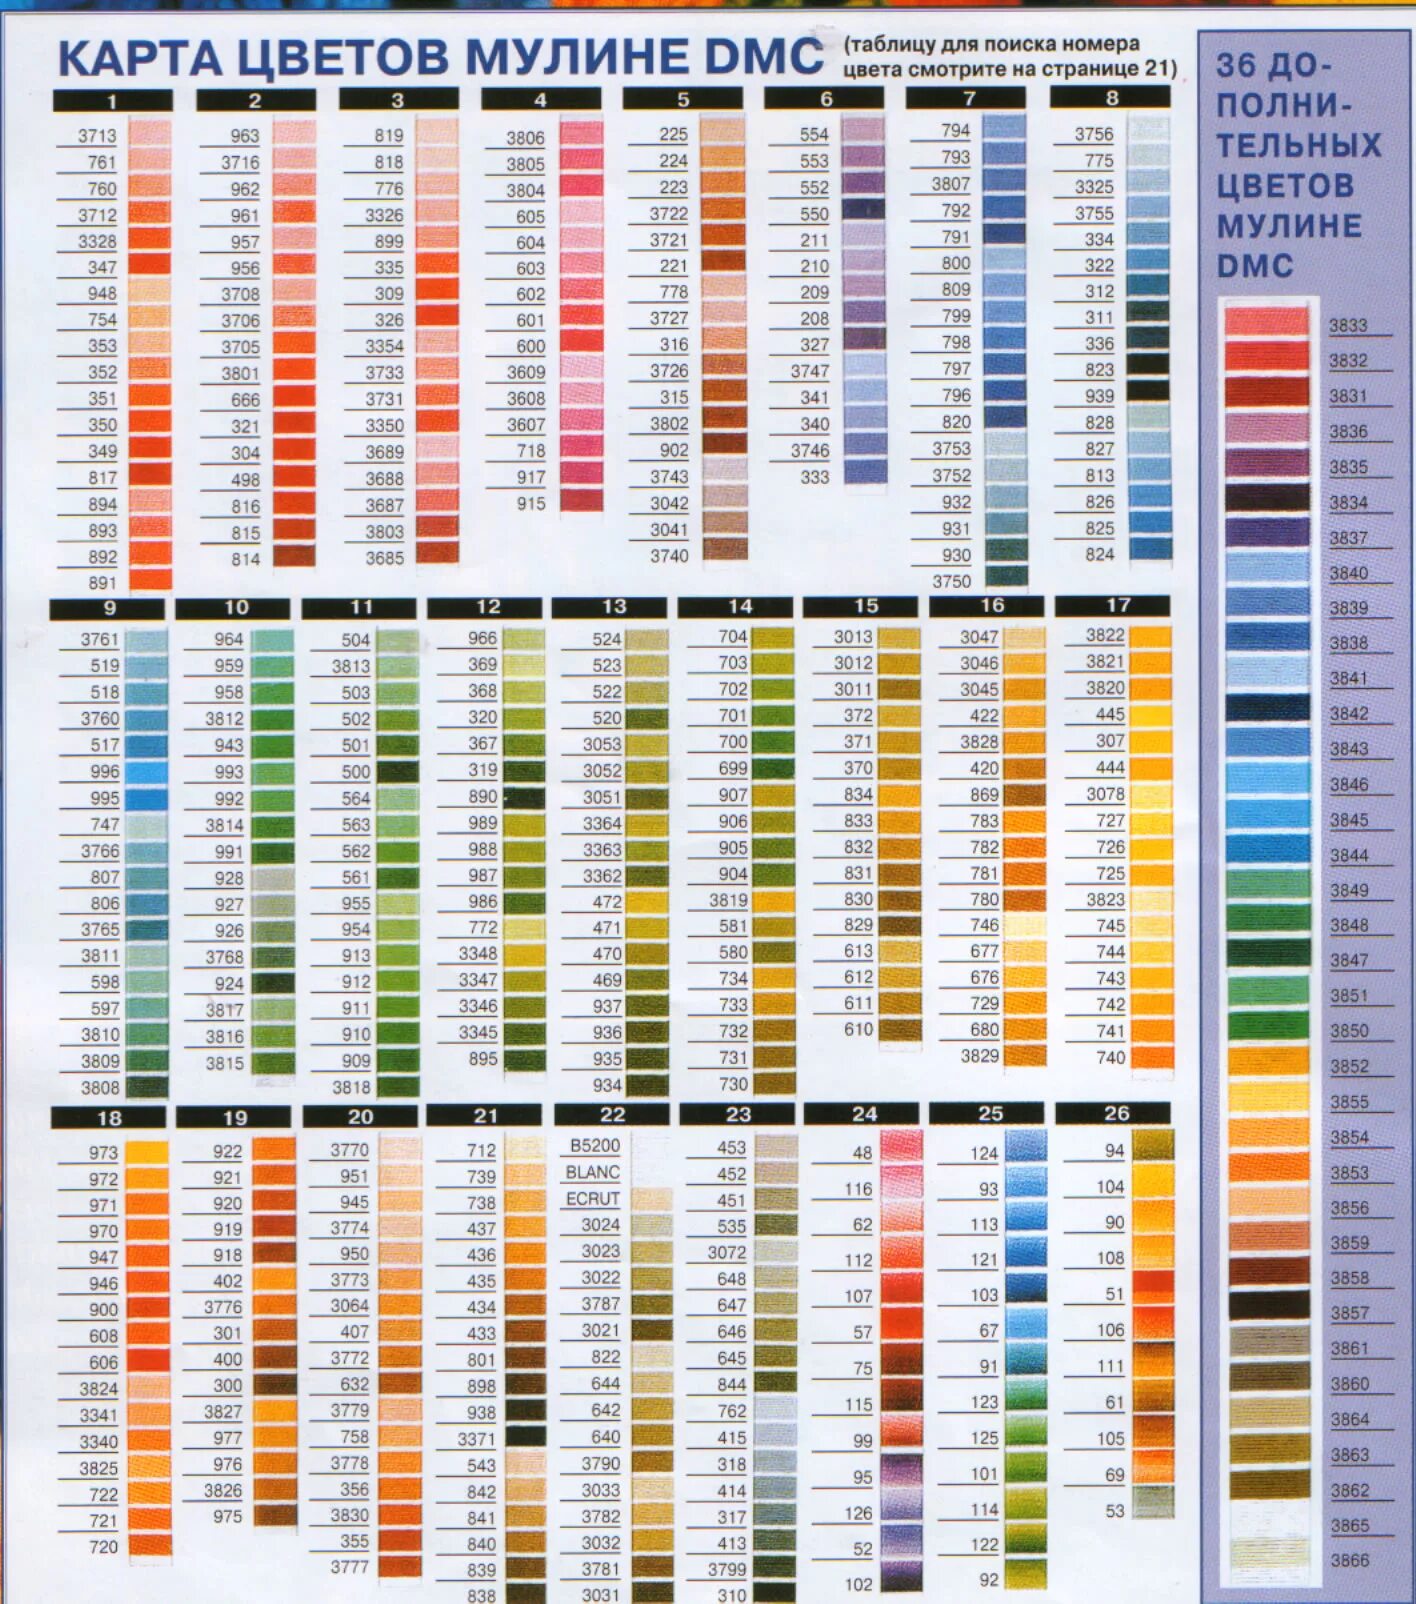 Таблица цветов ниток мулине СХС. Цветовая палитра мулине ДМС. Нитки мулине ДМС таблица. Нитки мулине DMC таблица цветов.